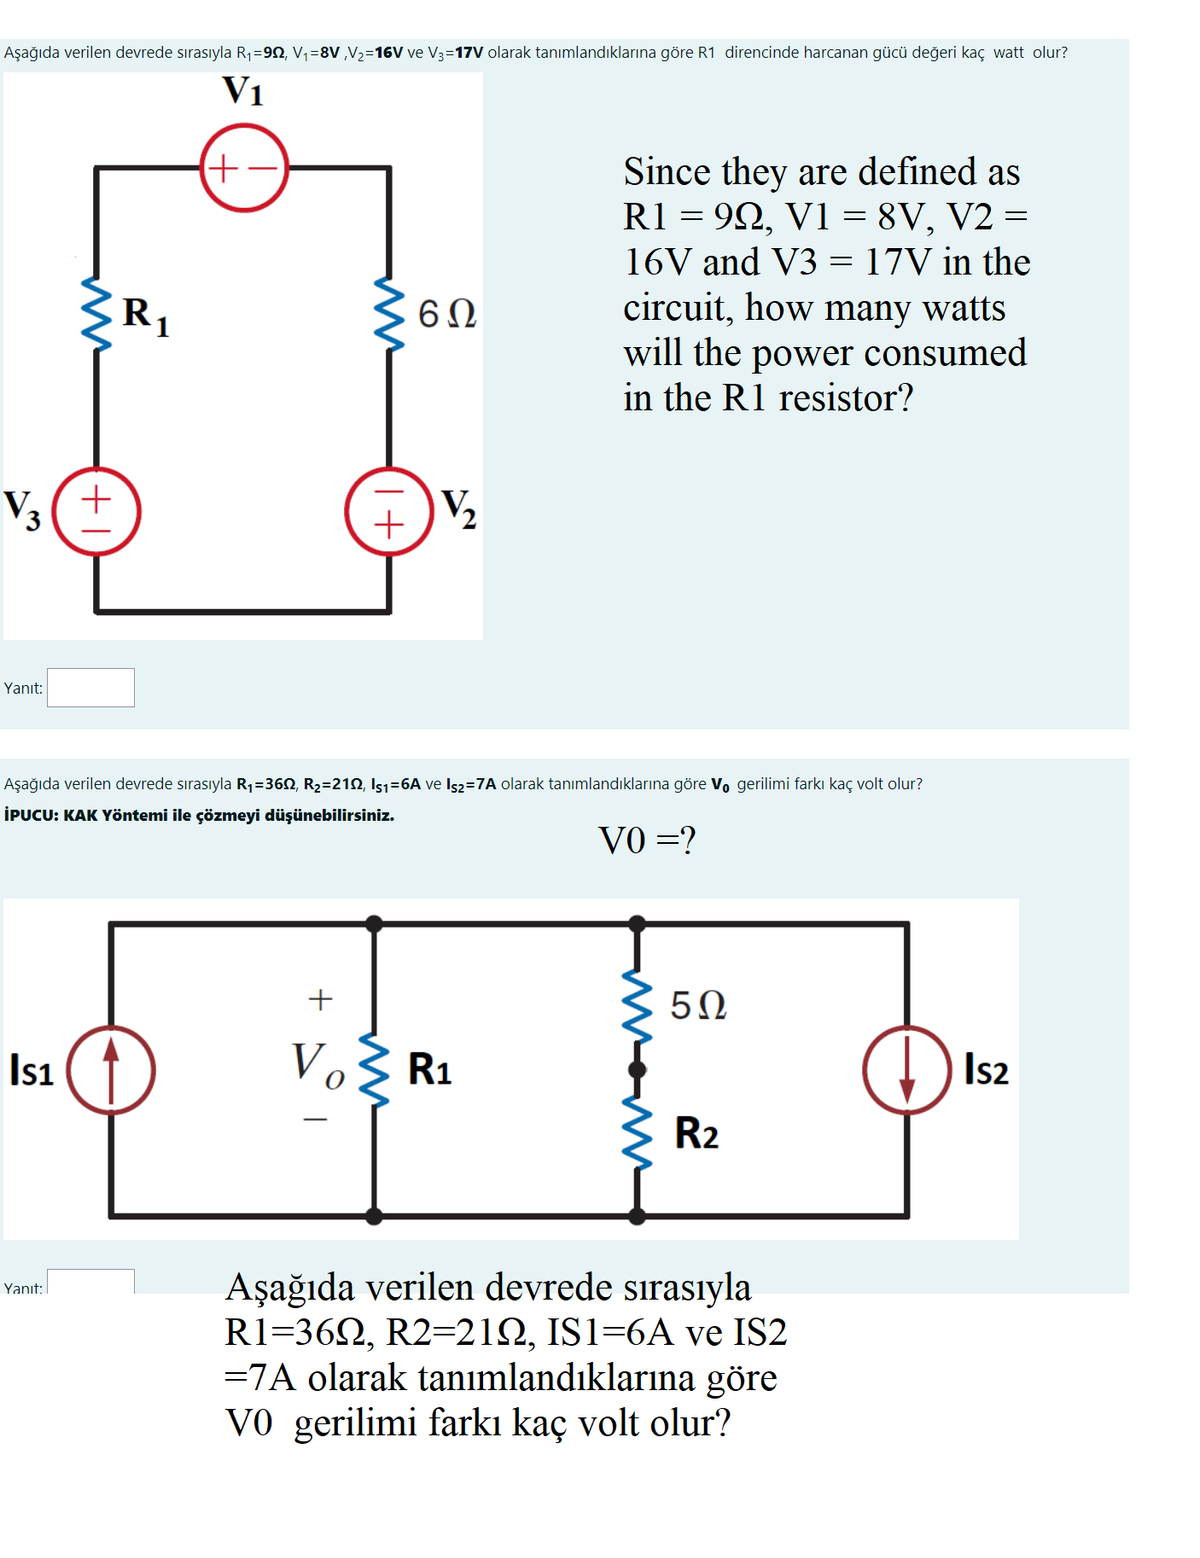 Aşağıda verilen devrede sırasıyla R1=92, V,=8V ,V2=16V ve V3=17V olarak tanımlandıklarına göre R1 direncinde harcanan gücü değeri kaç watt olur?
V1
Since they are defined as
R1 = 92, V1 = 8V, V2 =
16V and V3 = 17V in the
circuit, how many watts
will the power consumed
in the R1 resistor?
R1
V3(+
Yanıt:
Aşağıda verilen devrede sırasıyla R1=360, R2=212, Is1=6A ve Is2=7A olarak tanımlandıklarına göre V, gerilimi farkı kaç volt olur?
İPUCU: KAK Yöntemi ile çözmeyi düşünebilirsiniz.
VO =?
50
Isı
Vo R1
Is2
R2
Aşağıda verilen devrede sırasıyla
R1=362, R2=212, IS1=6A ve IS2
=7A olarak tanımlandıklarına göre
V0 gerilimi farkı kaç volt olur?
Yanıt:
I+
+
